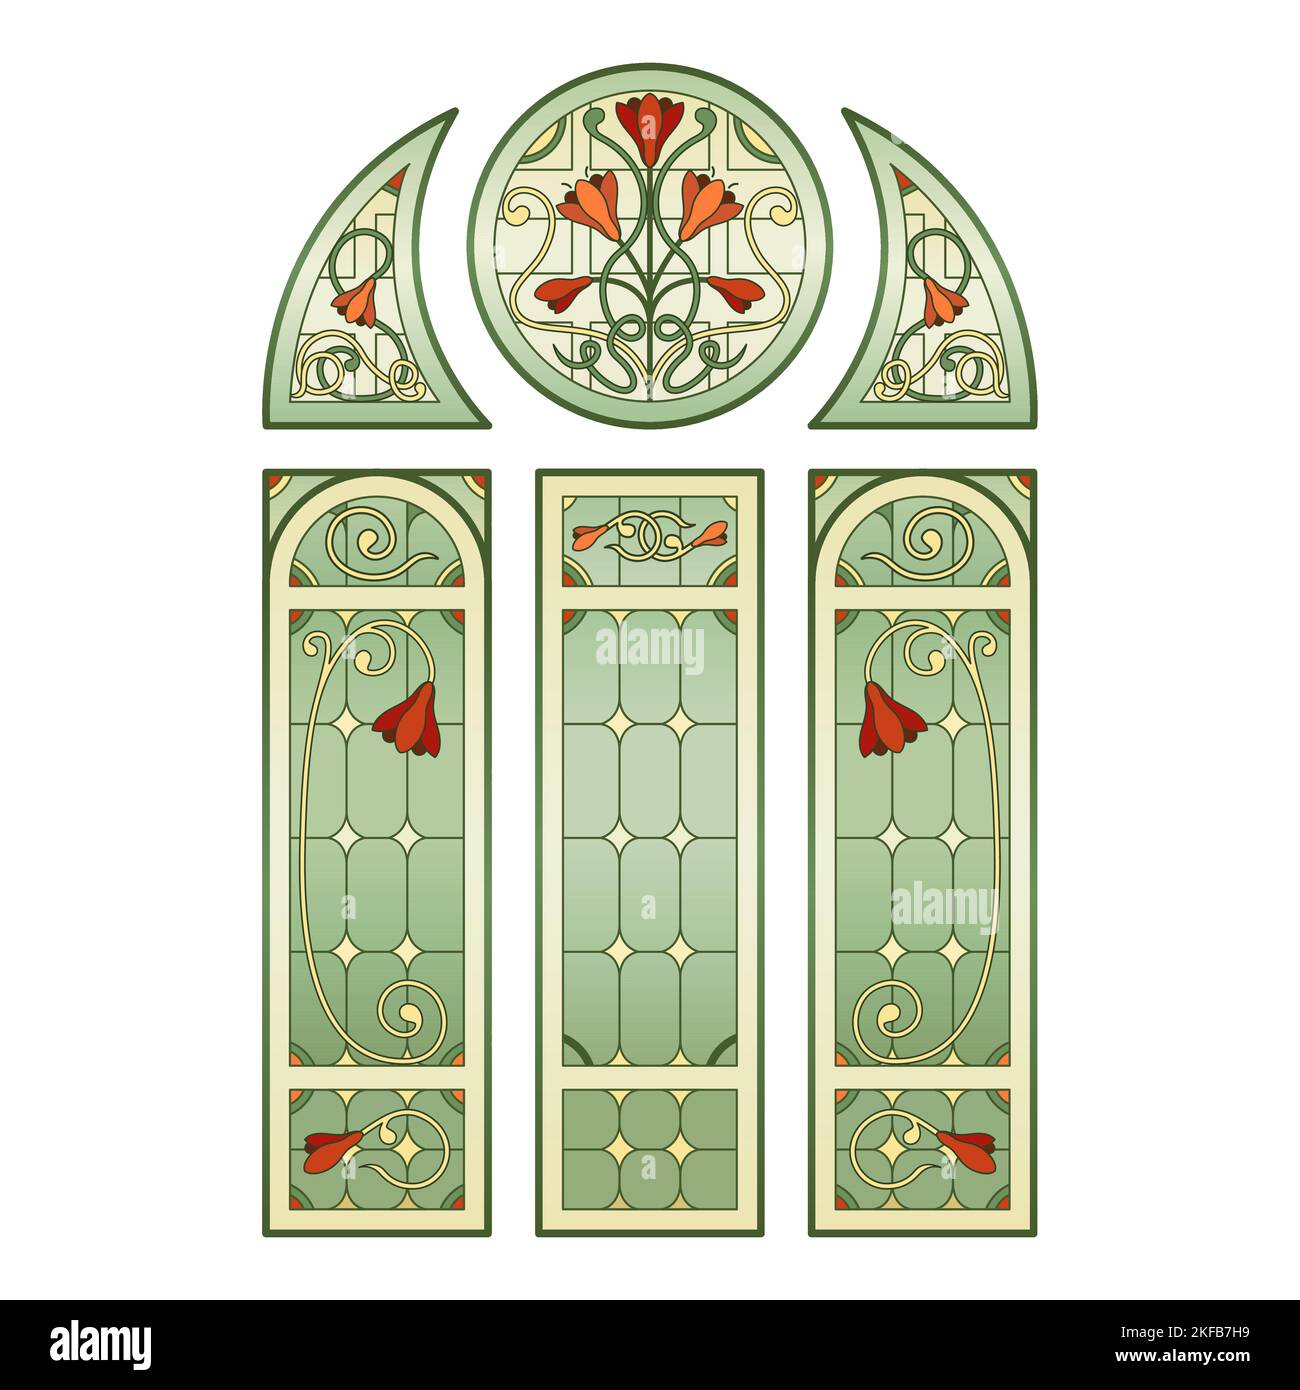 Gotische Kirchenfenster aus Buntglas. Stock Vektor